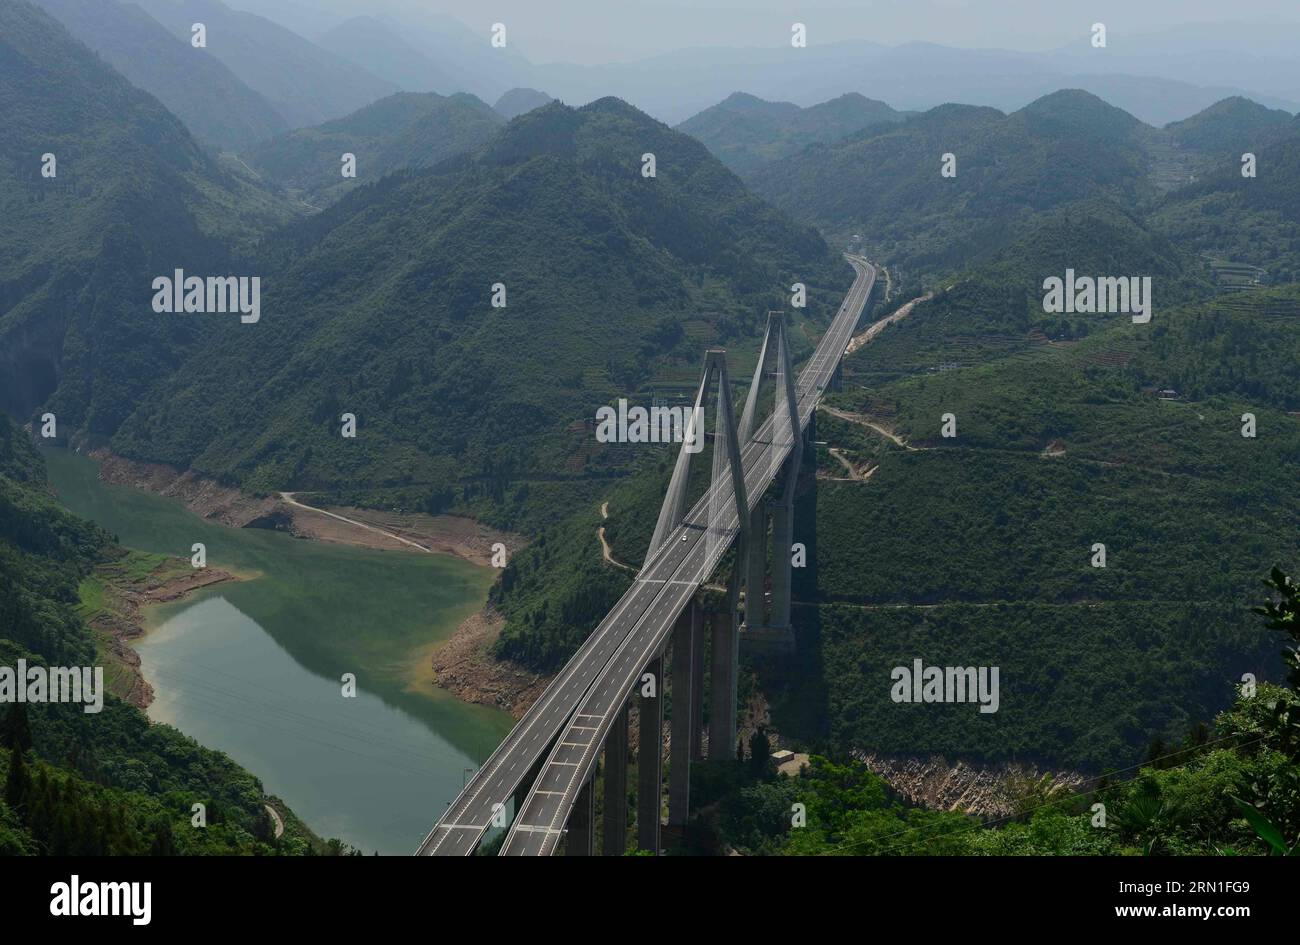 (141227) -- ENSHI, 27 dicembre 2014 -- foto scattata il 1 giugno 2014 mostra un segmento della Shanghai-Chengdu Expressway a Enshi, nella provincia di Hubei nella Cina centrale. La superstrada di Shanghai-Chengdu, lunga 1.966 chilometri, è stata messa in funzione il 27 dicembre 2014, collegando il comune di Shanghai, le province di Jiangsu e Anhui nella Cina orientale, la provincia di Hubei nella Cina centrale, il comune di Chongqing e la provincia di Sichuan nel sud-ovest della Cina. (Yxb) CHINA-SHANGHAI-CHENGDU-EXPRESSWAY (CN) YangxShunpei PUBLICATIONxNOTxINxCHN Enshi DEC 27 2014 la foto scattata IL 1° giugno 2014 mostra un segmento della Shanghai Chengdu Expressw Foto Stock